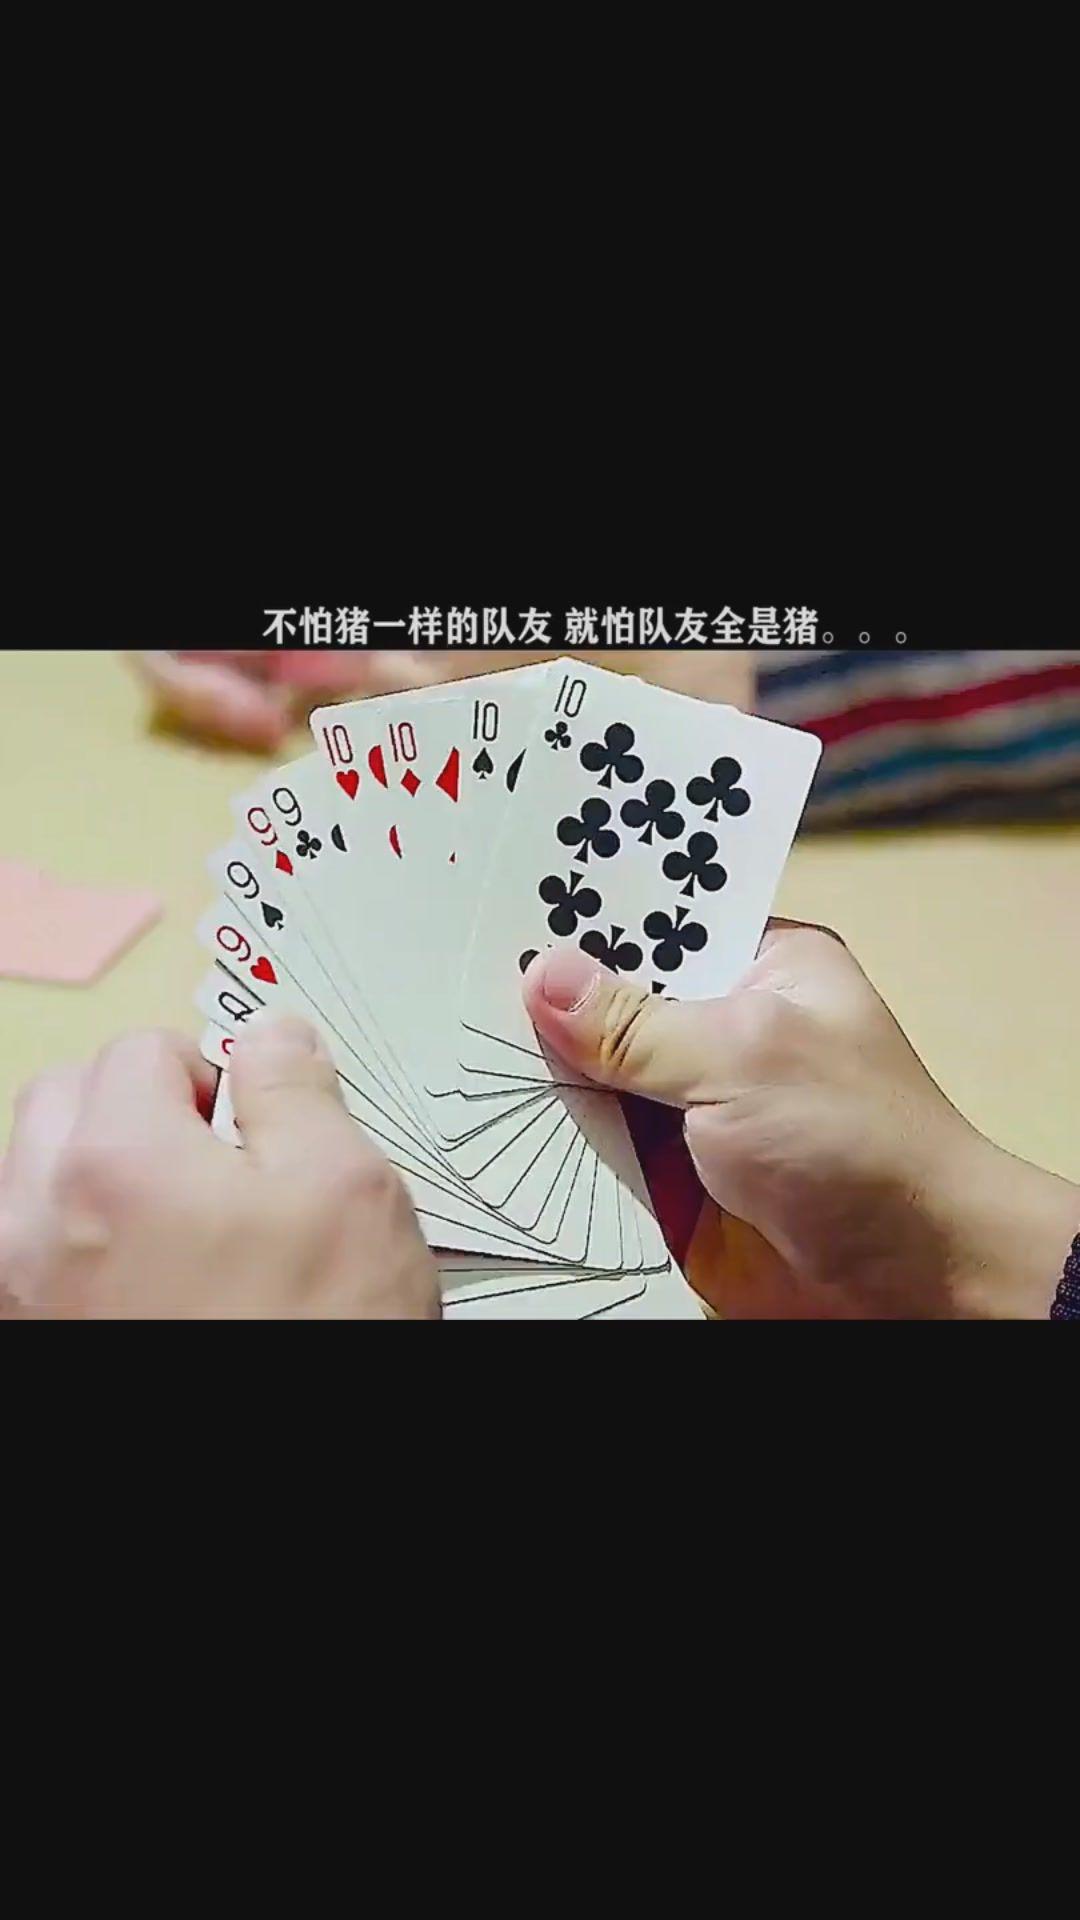 扑克牌玩法大全游戏_扑克牌手机游戏规则简单_扑克牌游戏玩法大全及规则